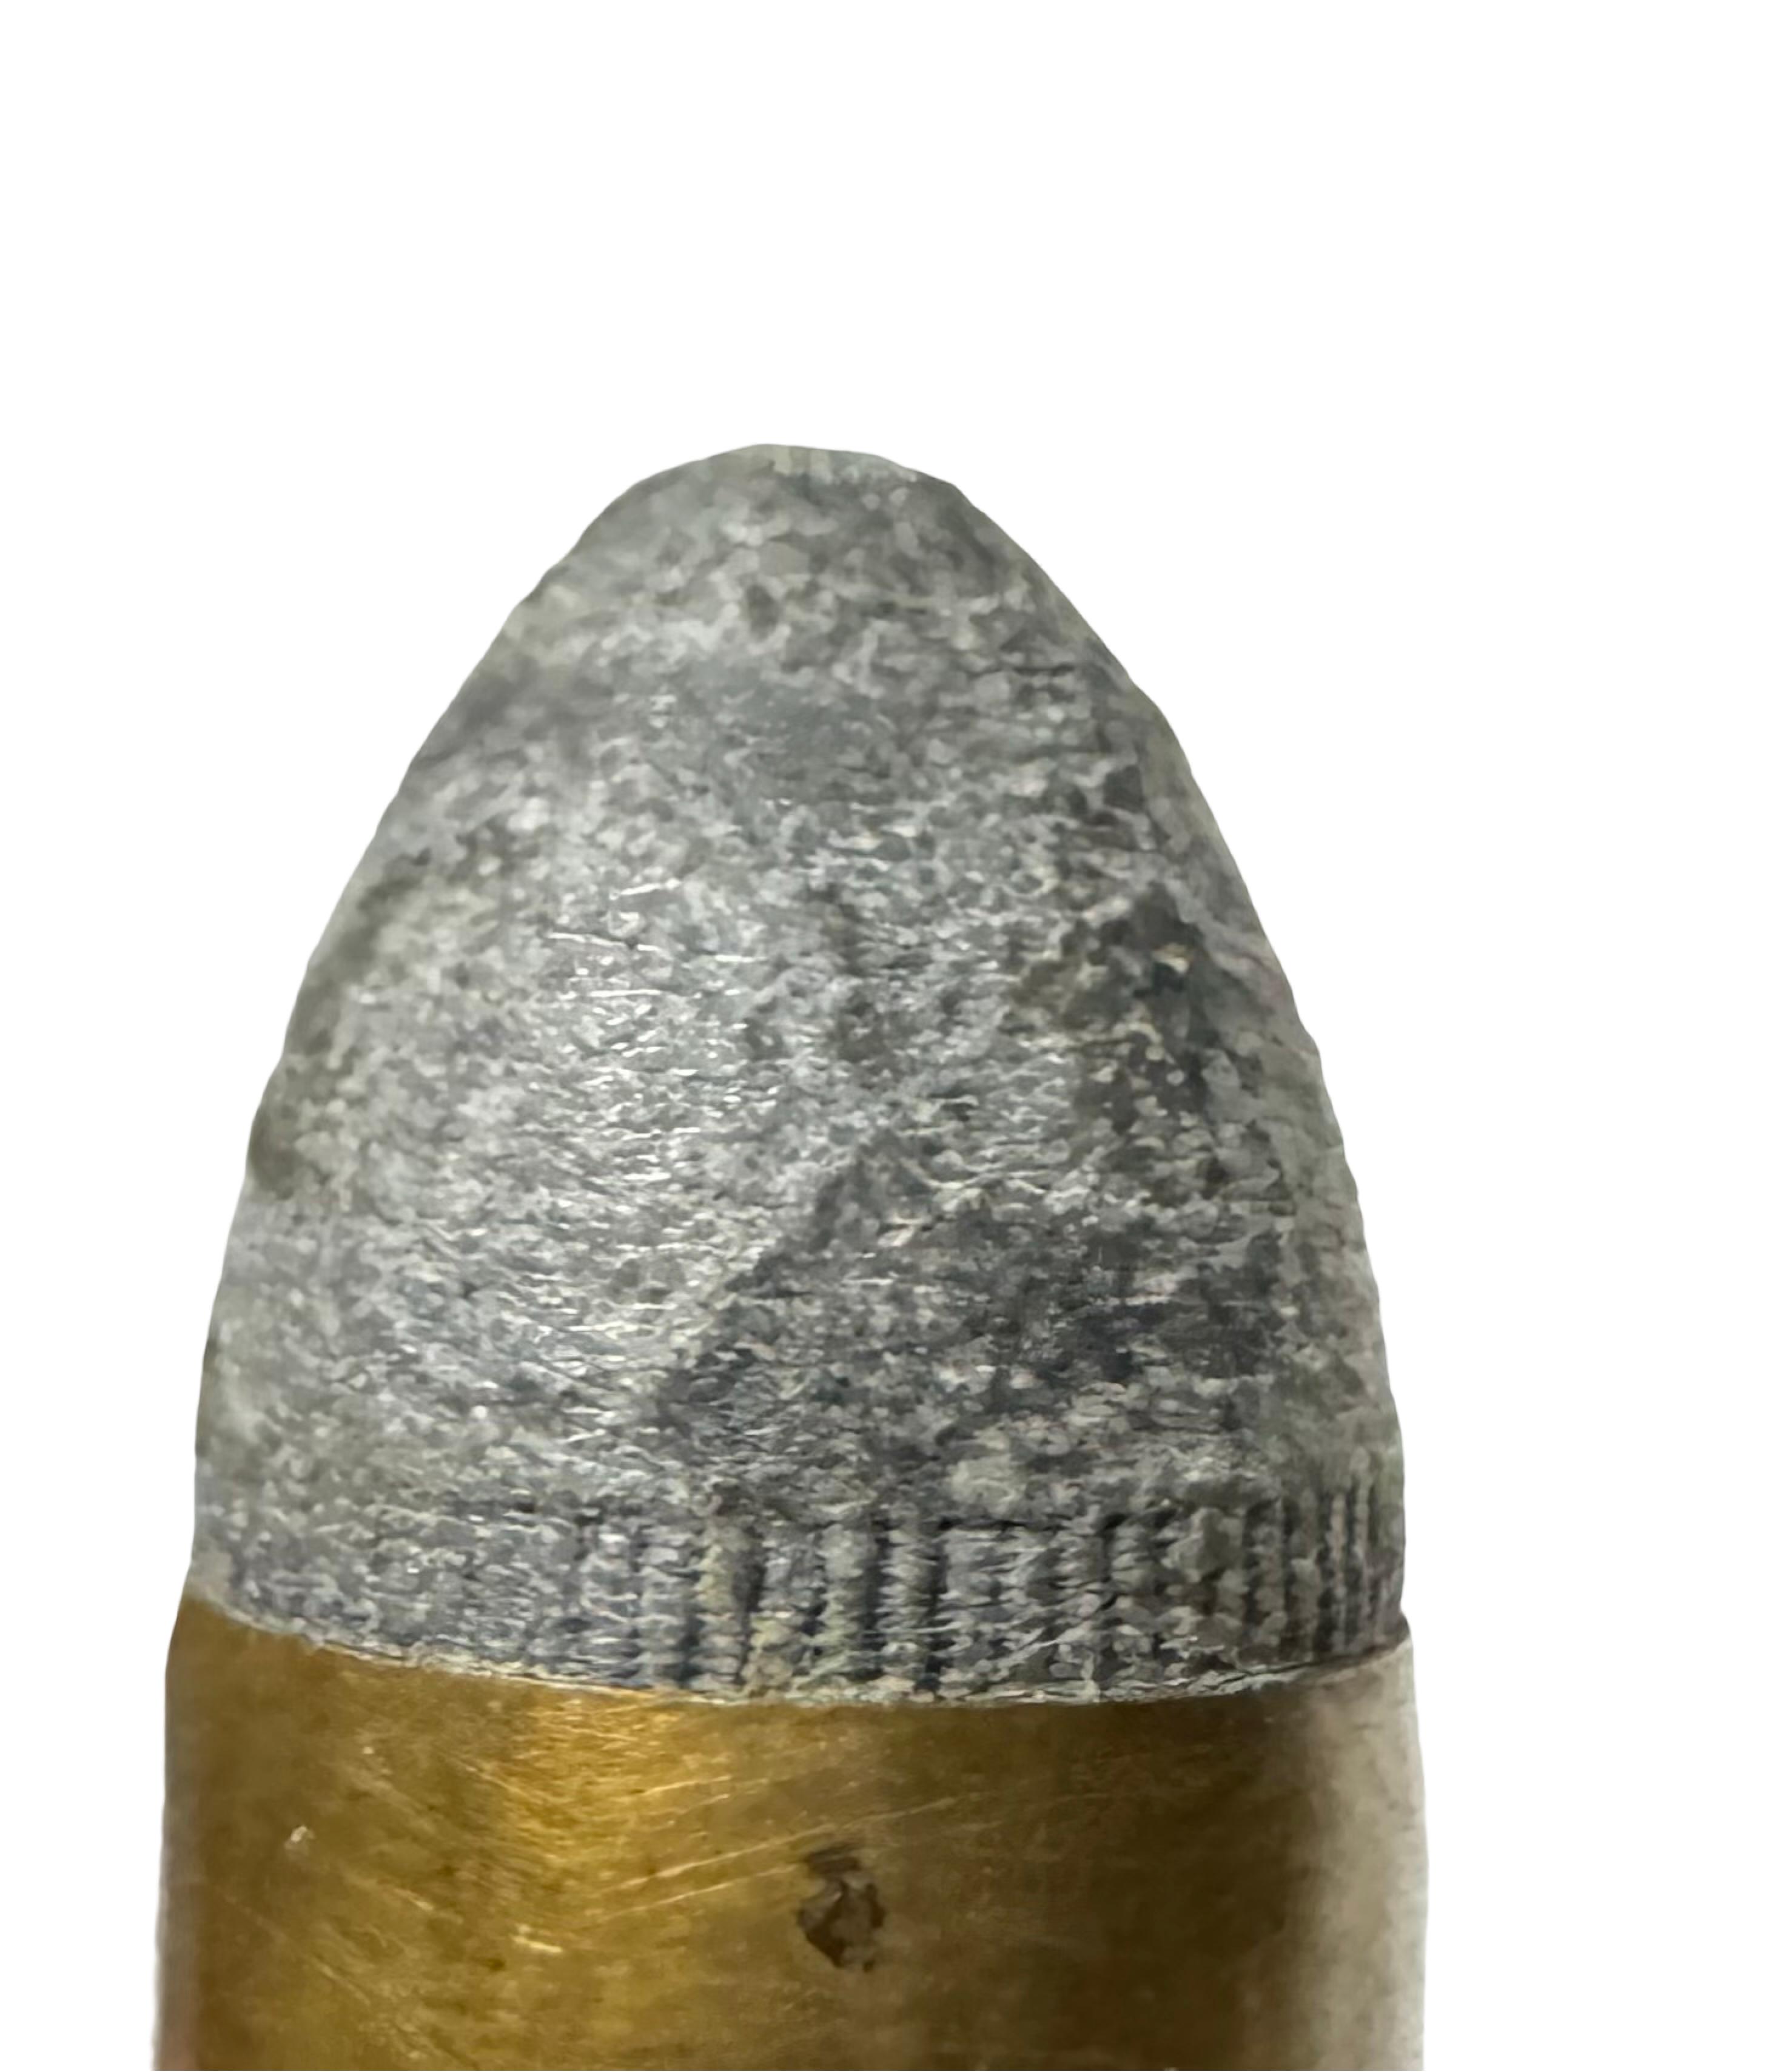 (8) French 9mm Inside Primed Cartridges by Gevelot & Gaupillet